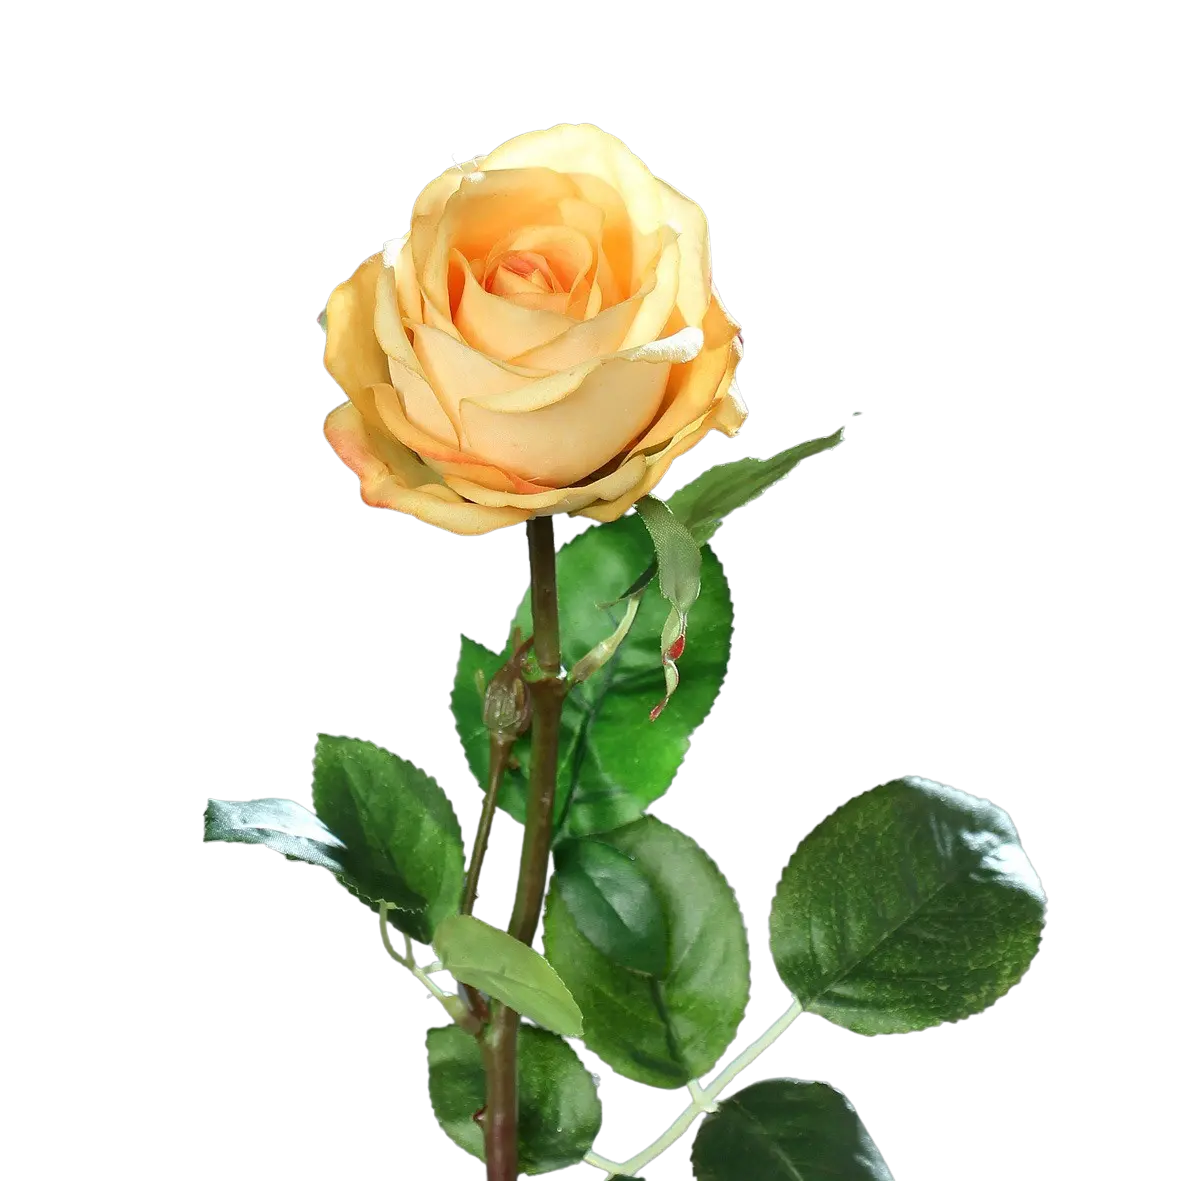 Rosa artificial - Platão | 66 cm